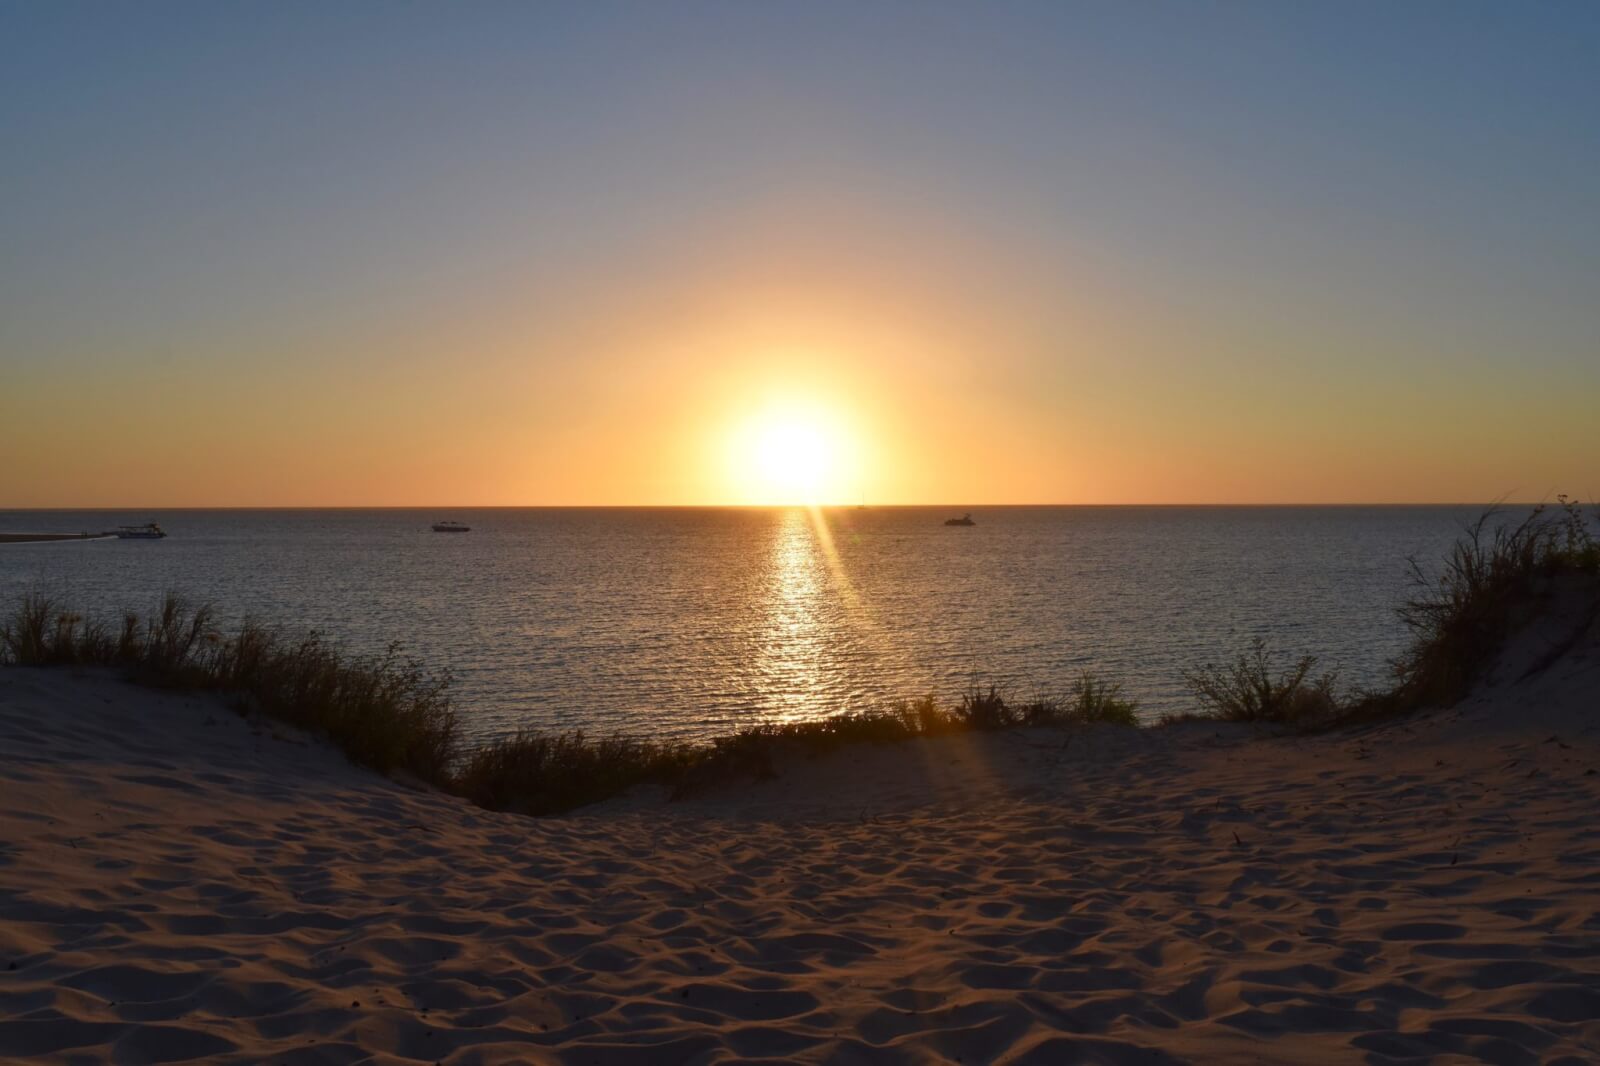 the sun setting into the ocean from a sandy beach